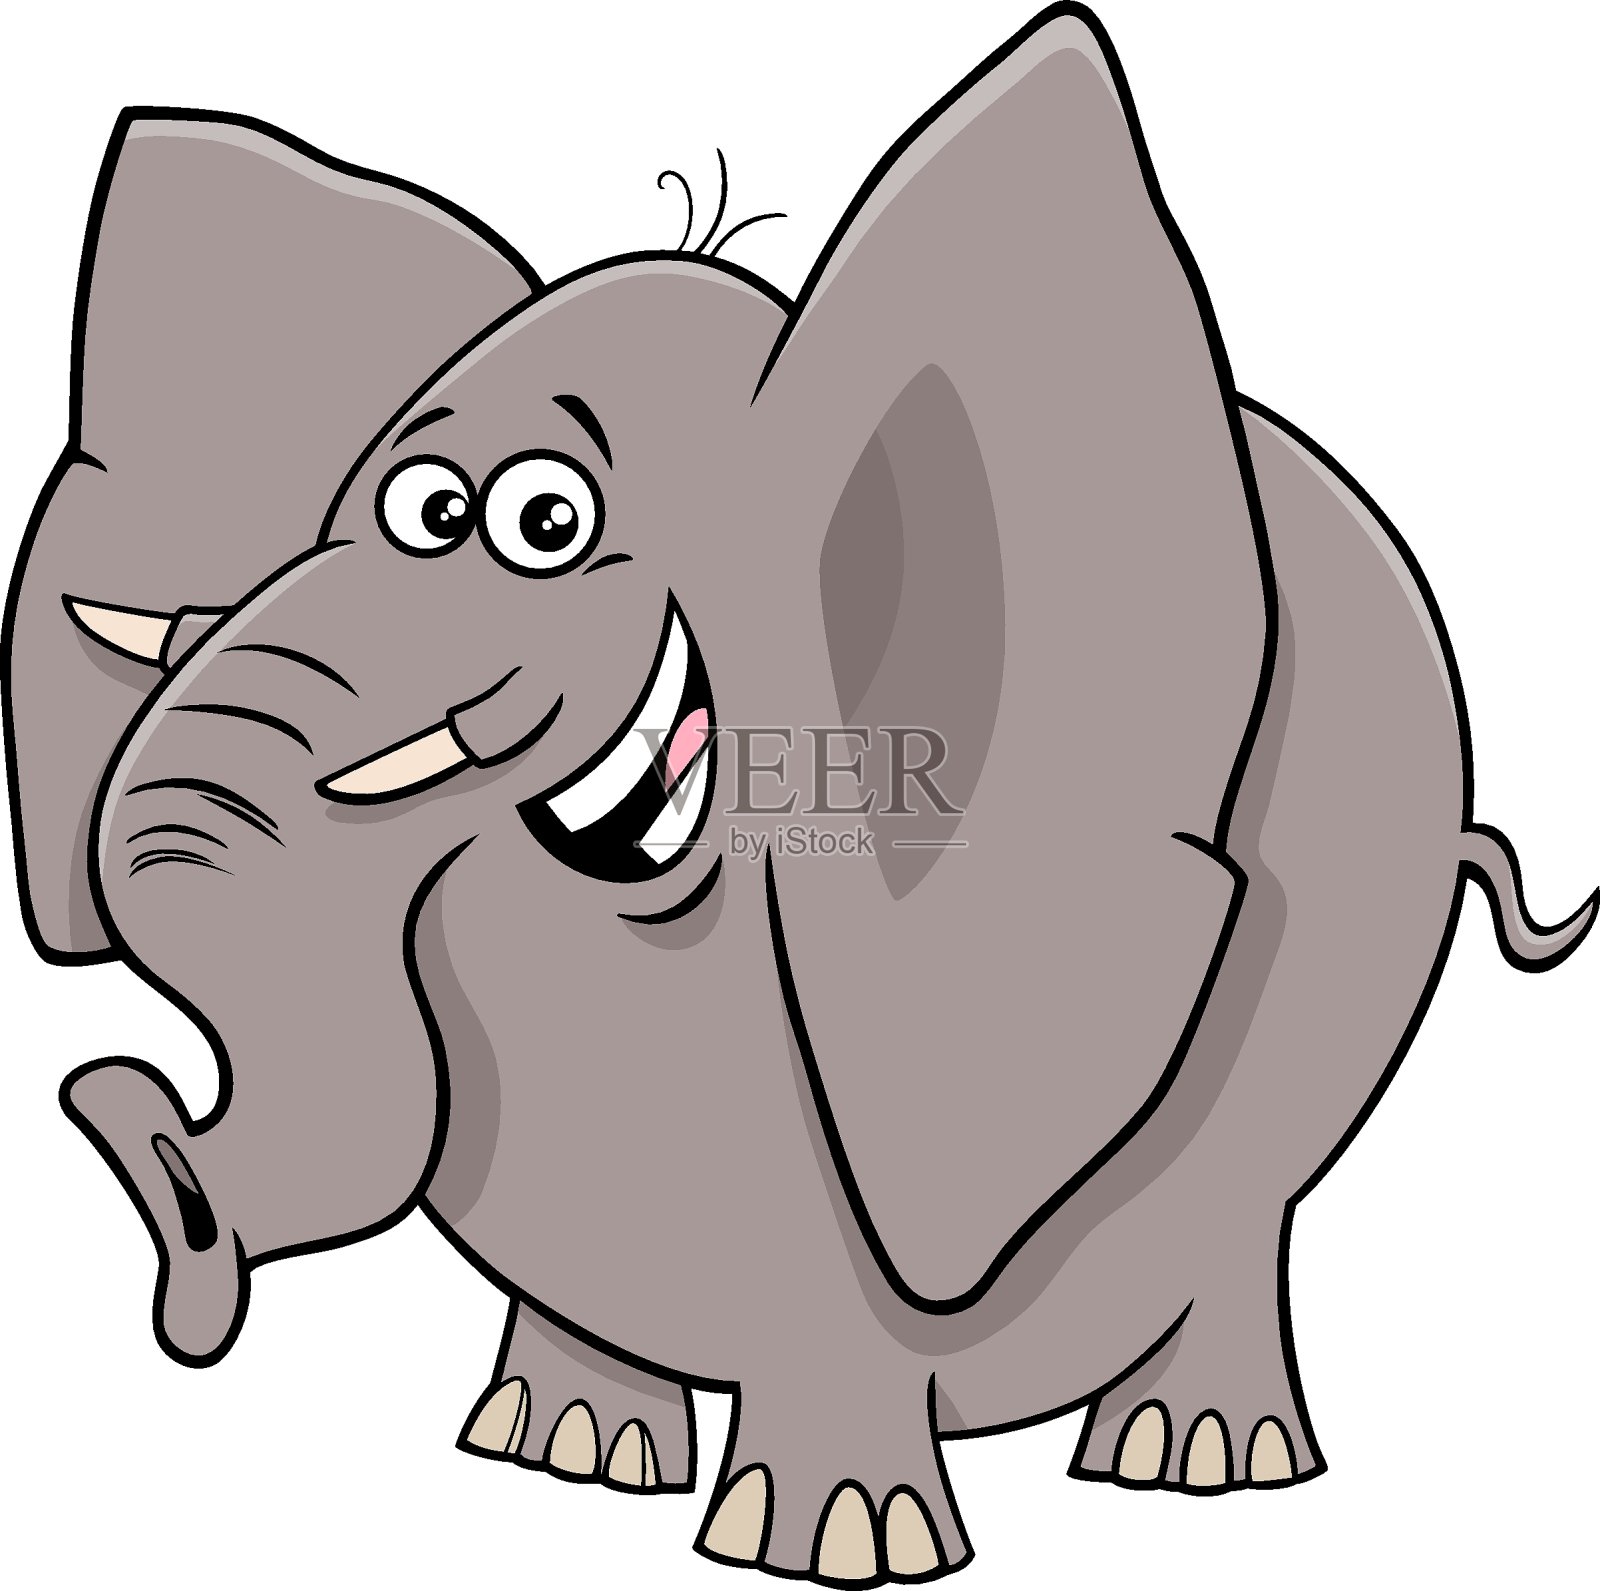 漫画大象卡通动物人物设计元素图片